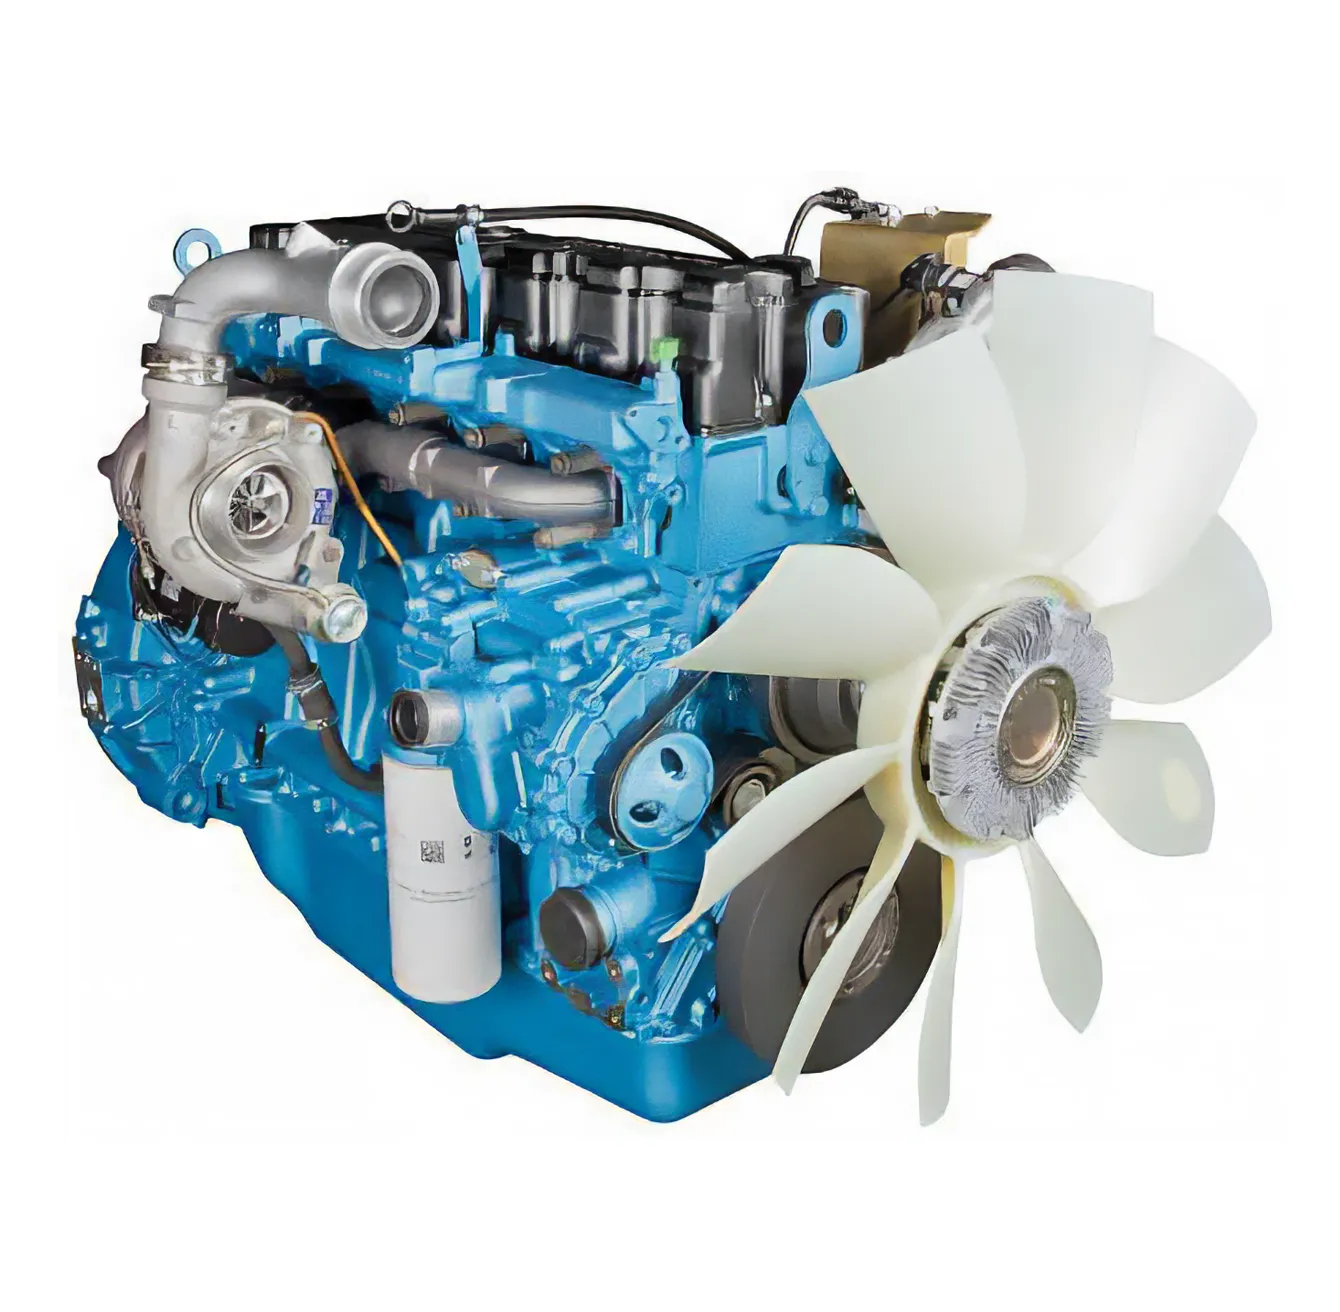 Мощный и экономичный двигатель ЯМЗ, 360 л. с